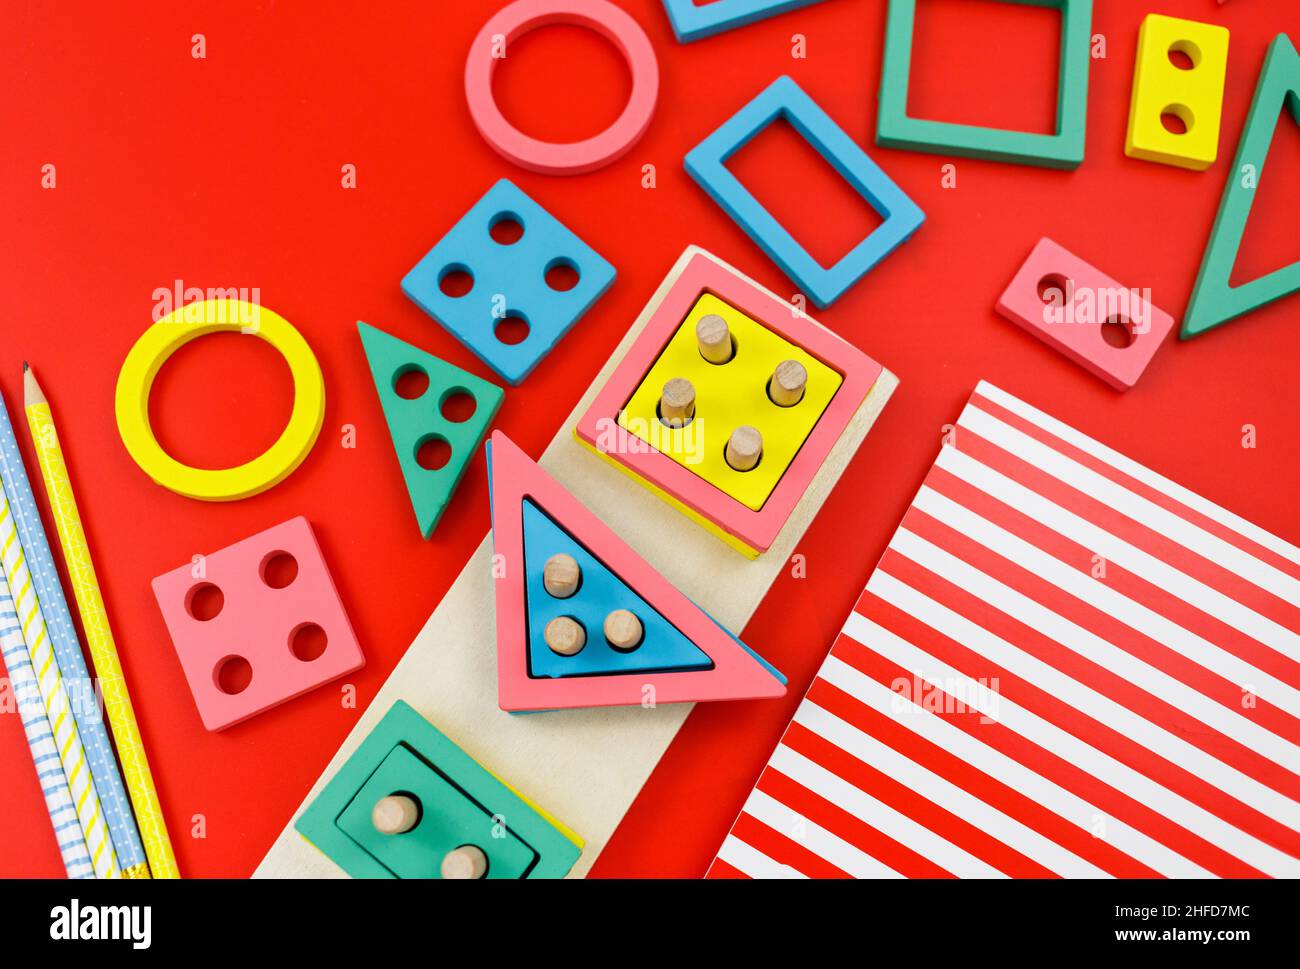 Bloques de madera multicolor sobre fondo rojo. Juguetes de puzzle de moda. Formas geométricas: Cuadrado, círculo, triángulo, rectángulo. Juguetes educativos Foto de stock